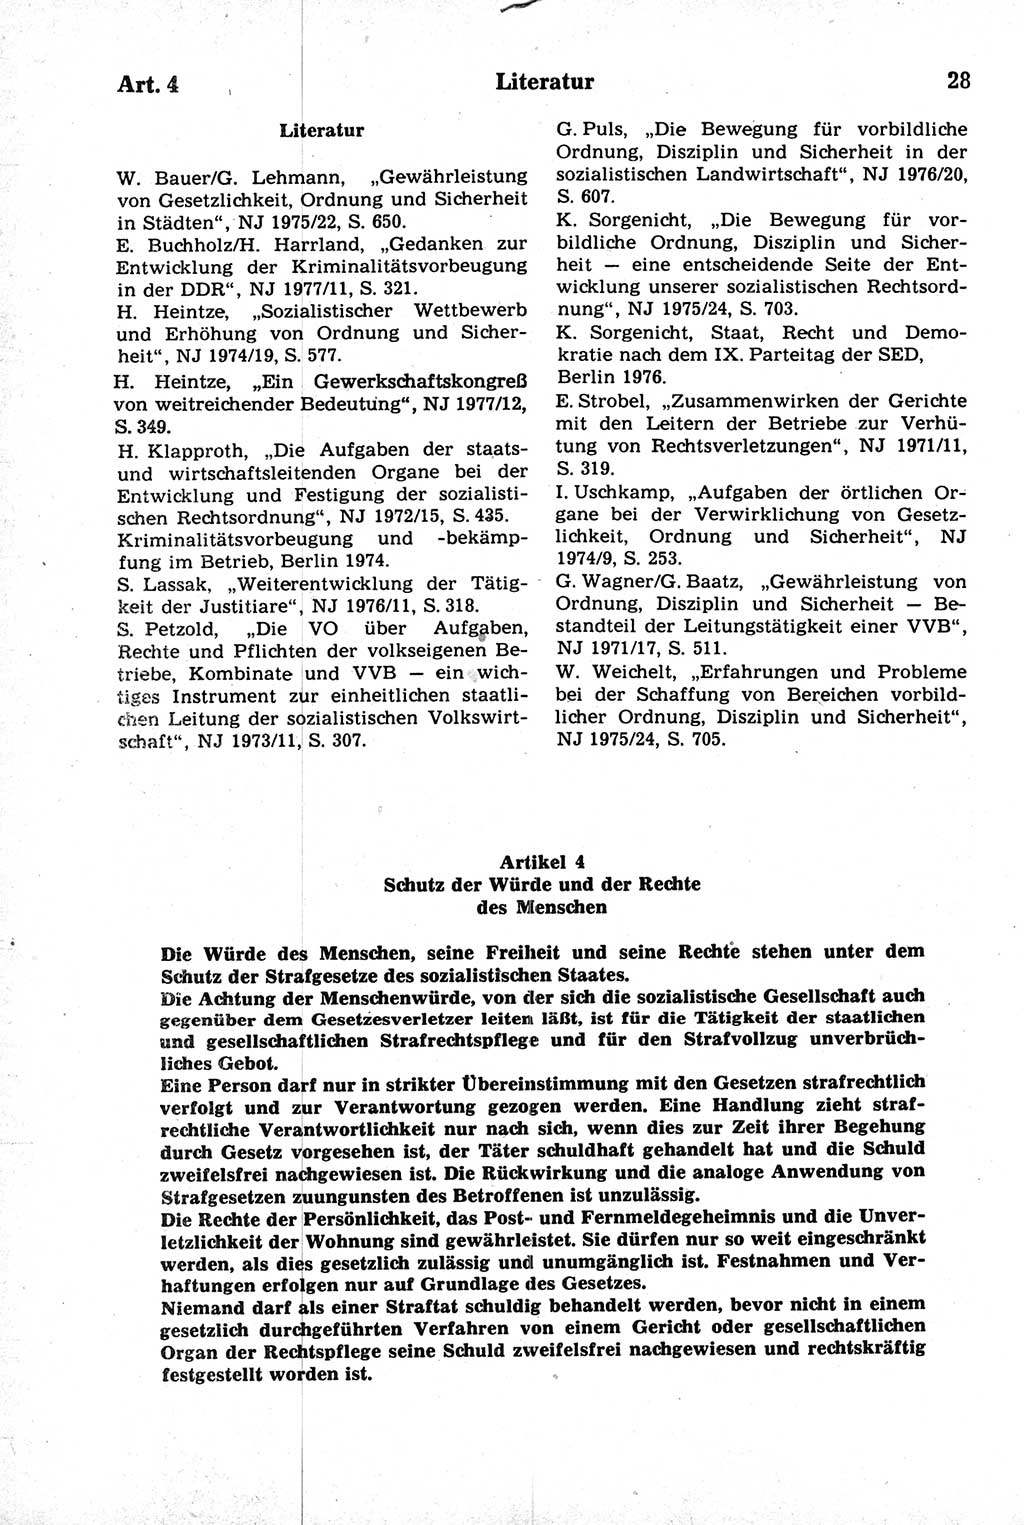 Strafrecht der Deutschen Demokratischen Republik (DDR), Kommentar zum Strafgesetzbuch (StGB) 1981, Seite 28 (Strafr. DDR Komm. StGB 1981, S. 28)